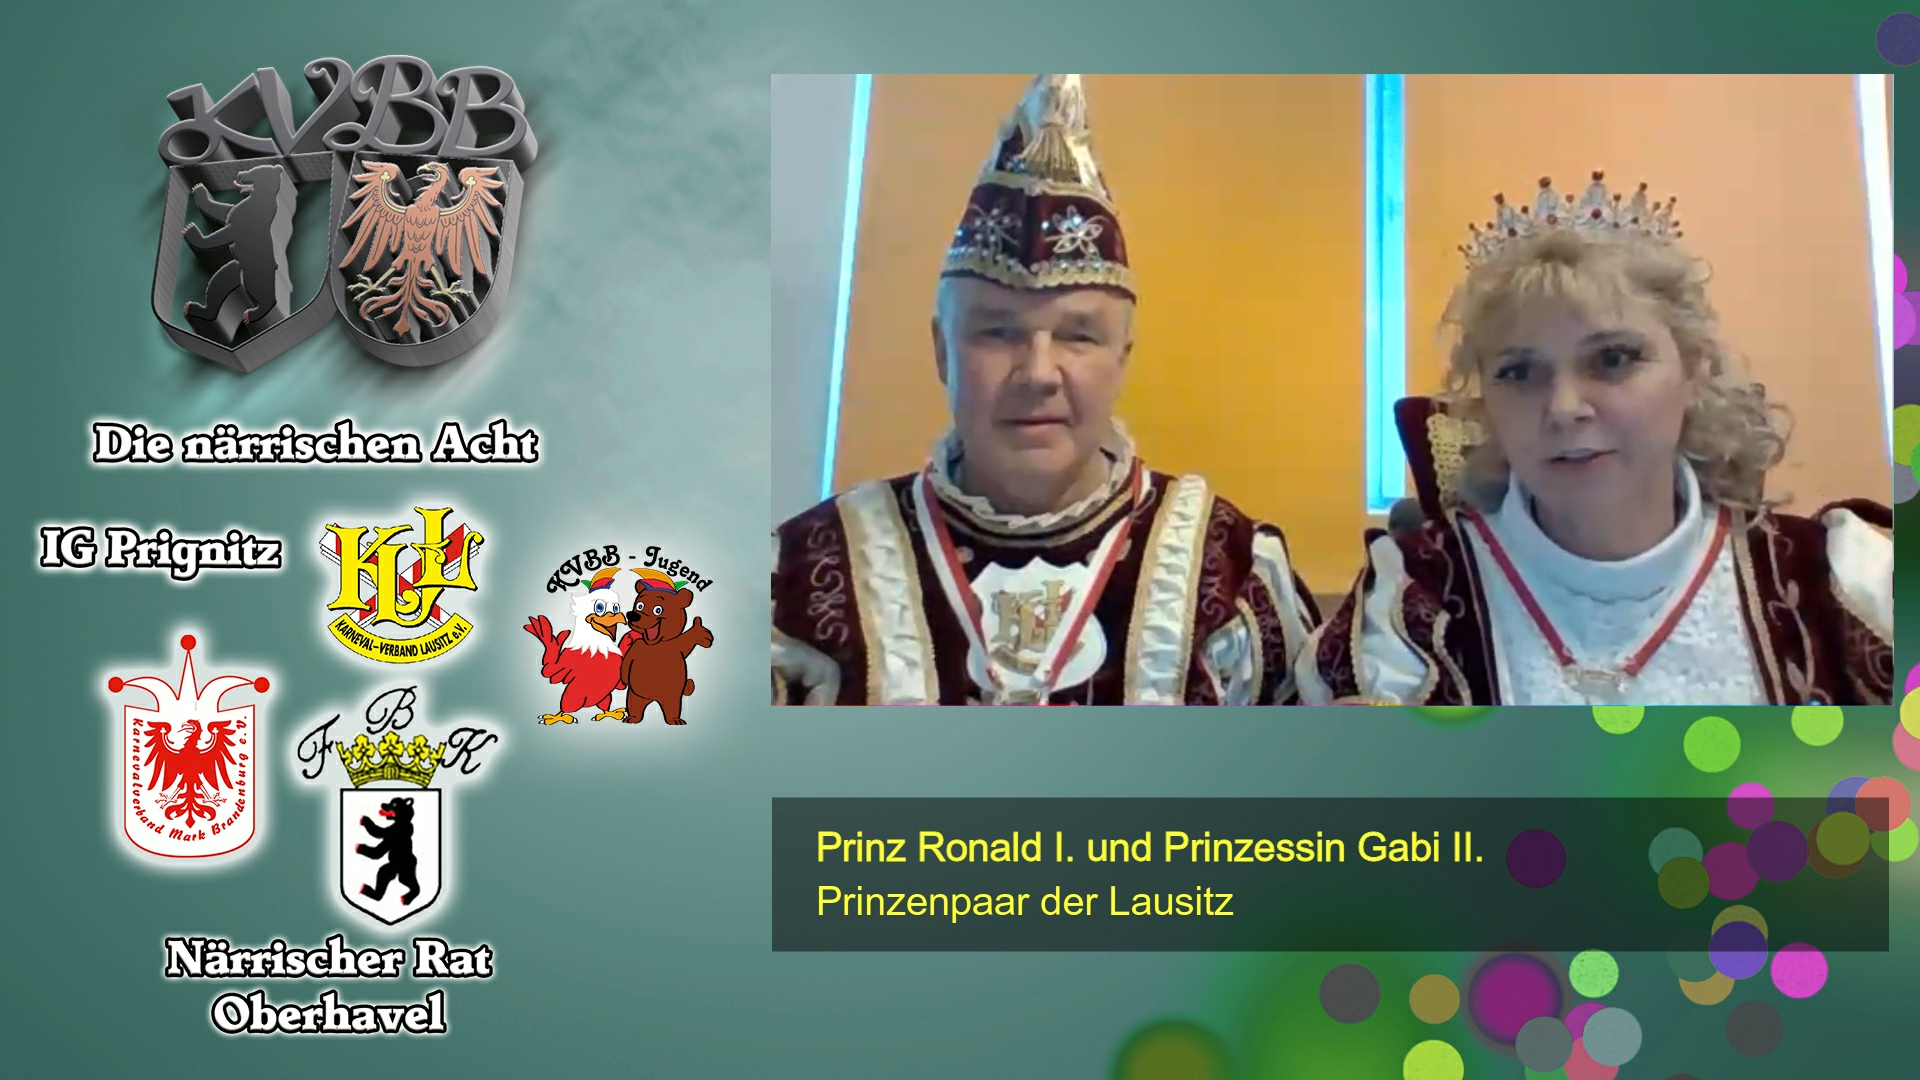 Der Präsident des Karnevalverbandes Berlin-Brandenburg e.V. Fred Witschel im Gespräch mit dem Prinzenpaar der Lausitz Prinz Ronald I. und Prinz Gabi II.